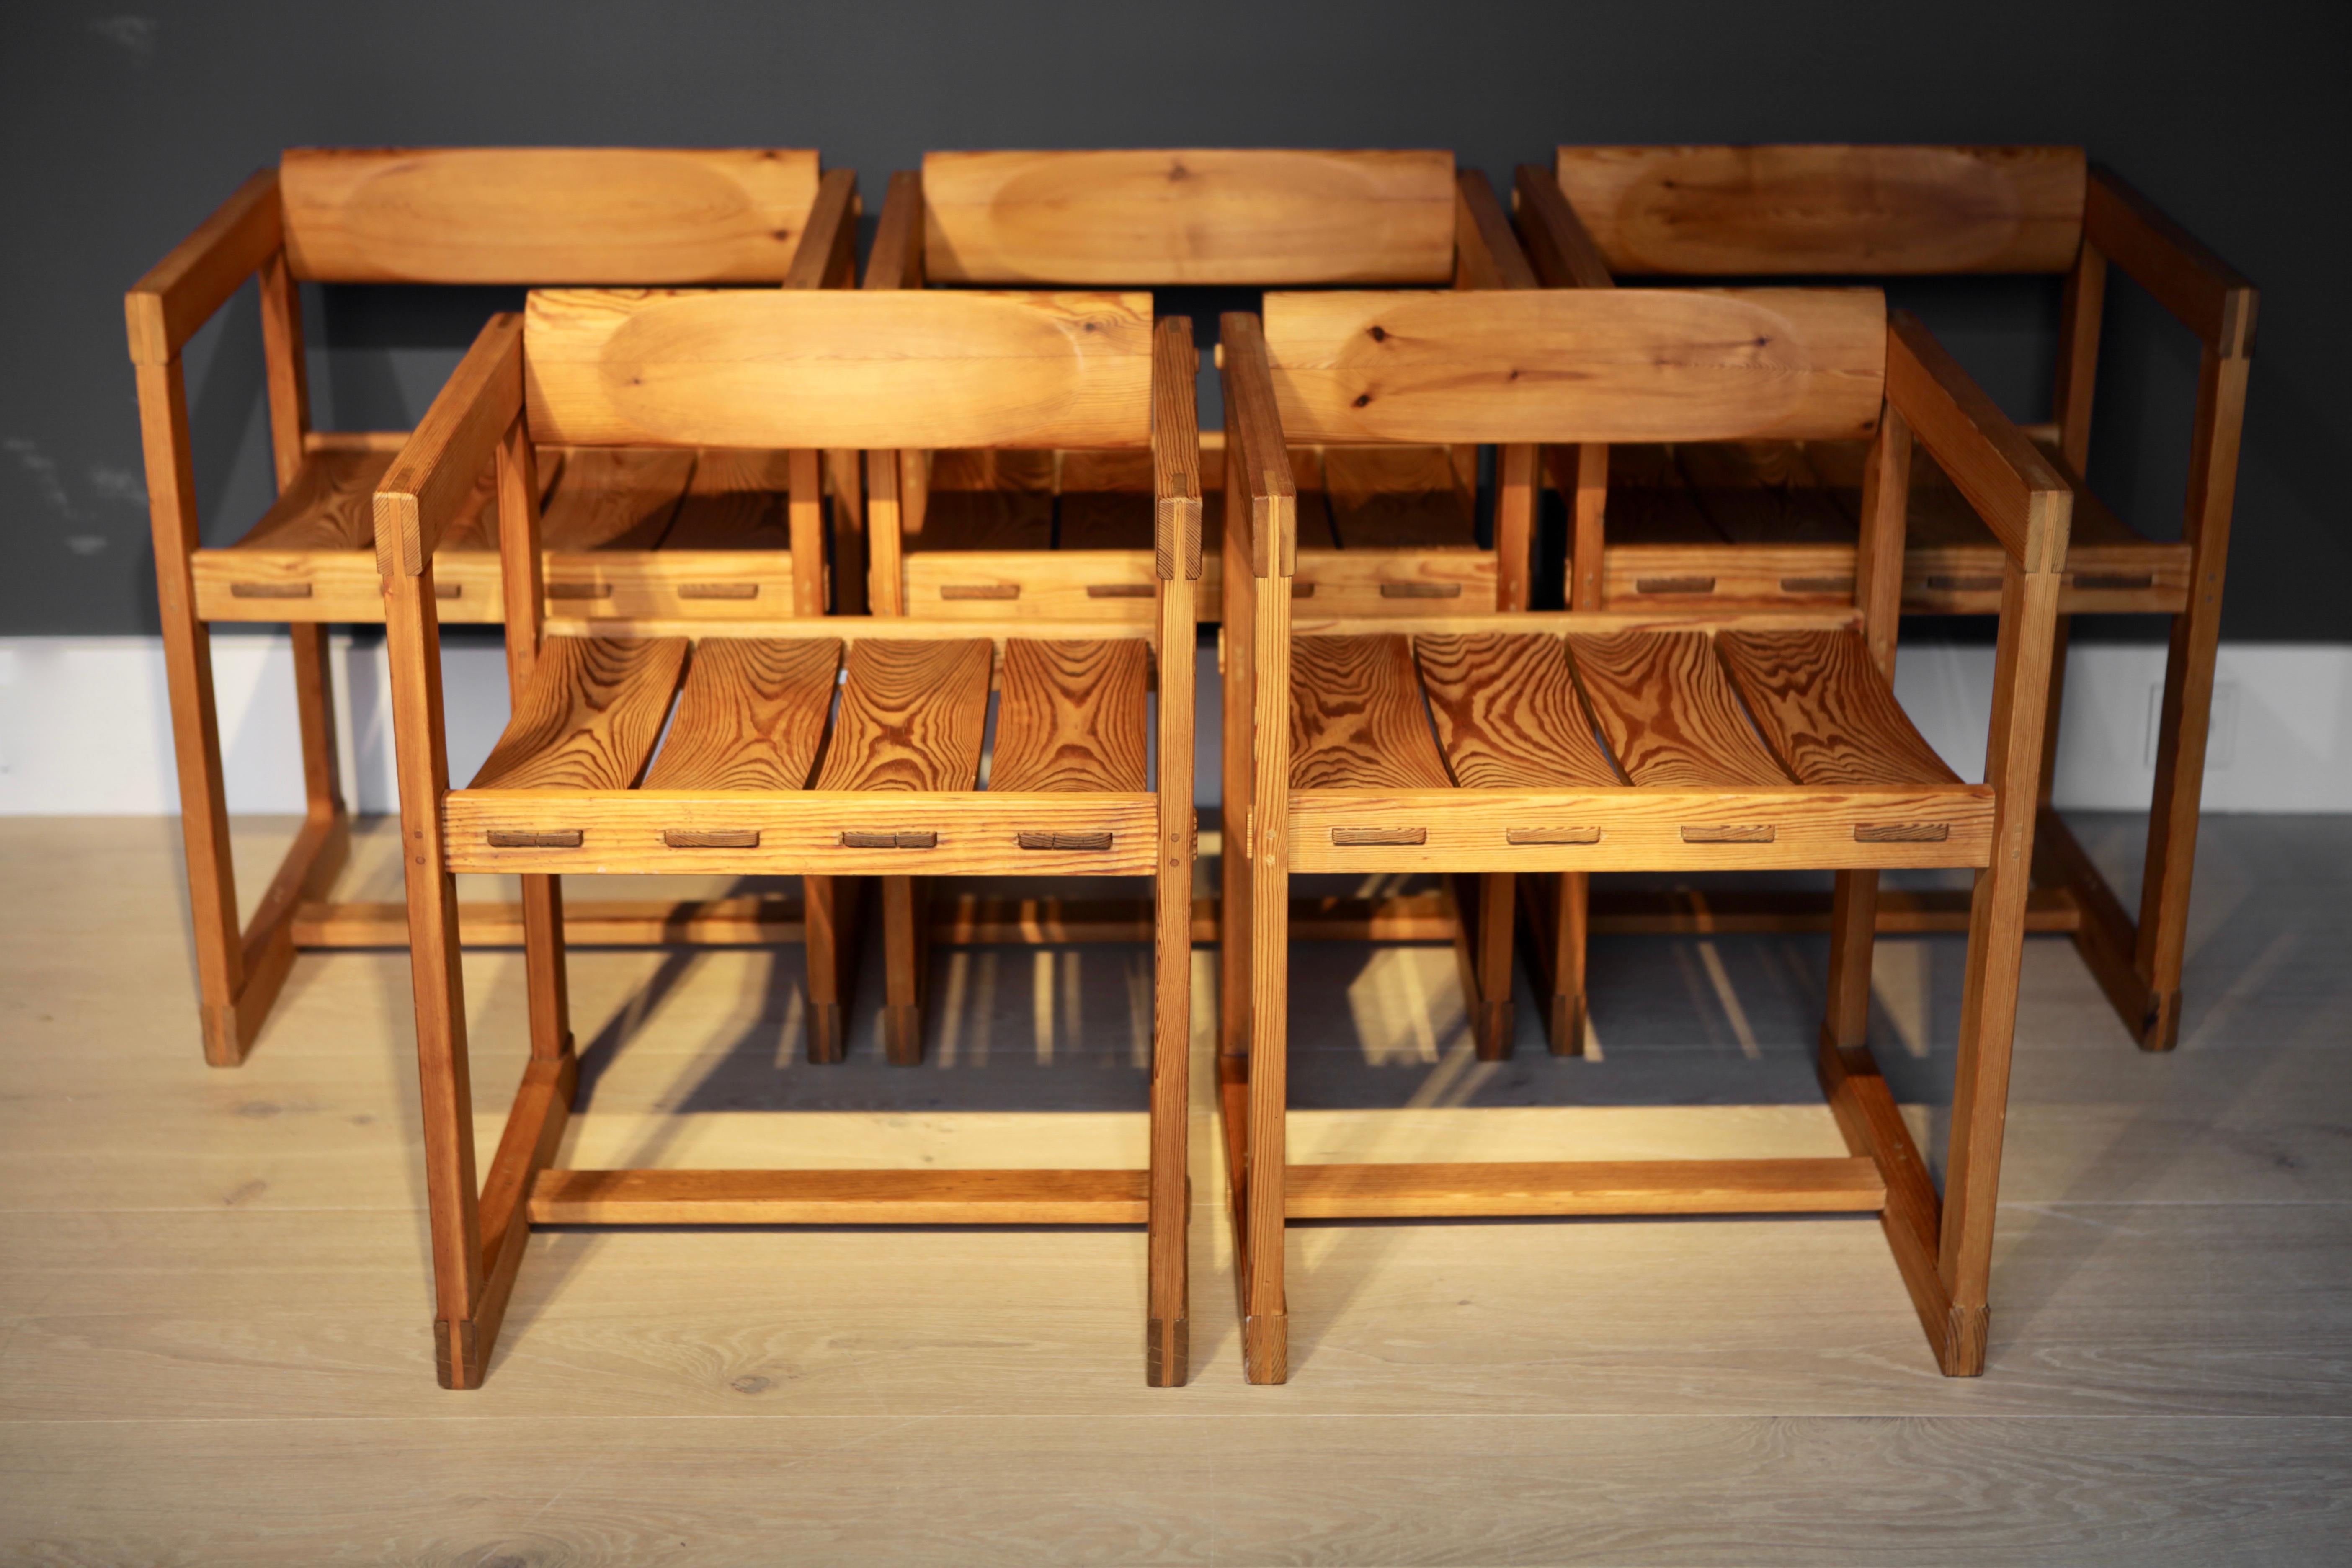 Ein Satz von 5 seltenen Esszimmerstühlen mit Armlehnen, entworfen von Edvin Helseth im Jahr 1965 in Norwegen und hergestellt von Trybo.
Die Stühle sind aus massivem Kiefernholz gefertigt und haben eine kippbare Rückenlehne für hohen